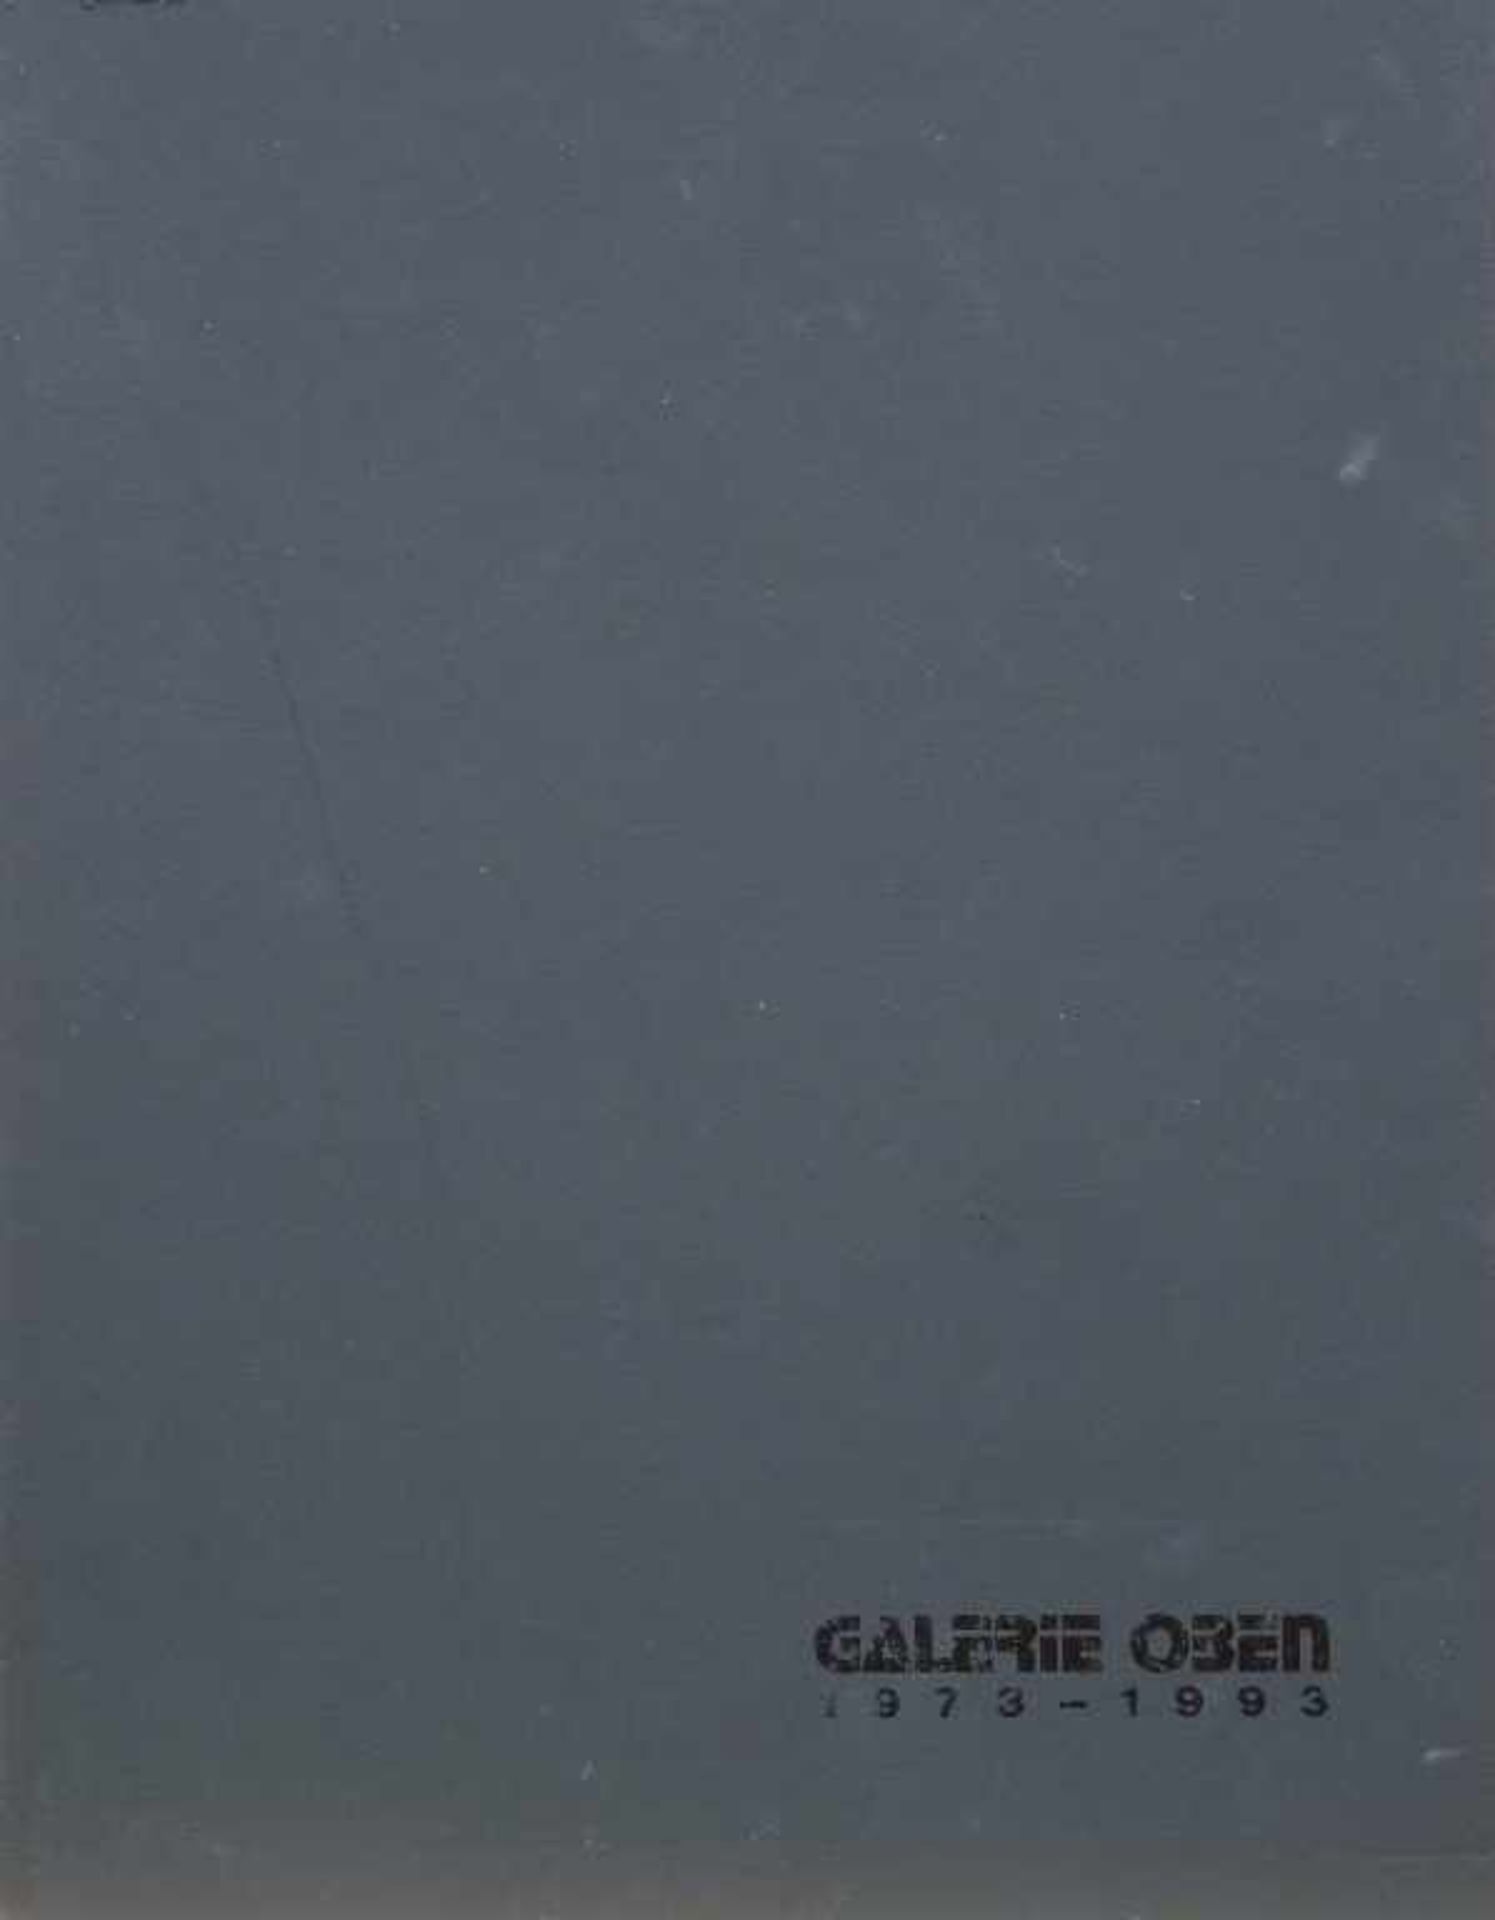 MORGNER, MICHAEL: "Galerie Oben 1973-1993"118 Seiten: zahllose s/w-Abbildungen und reproduzierte